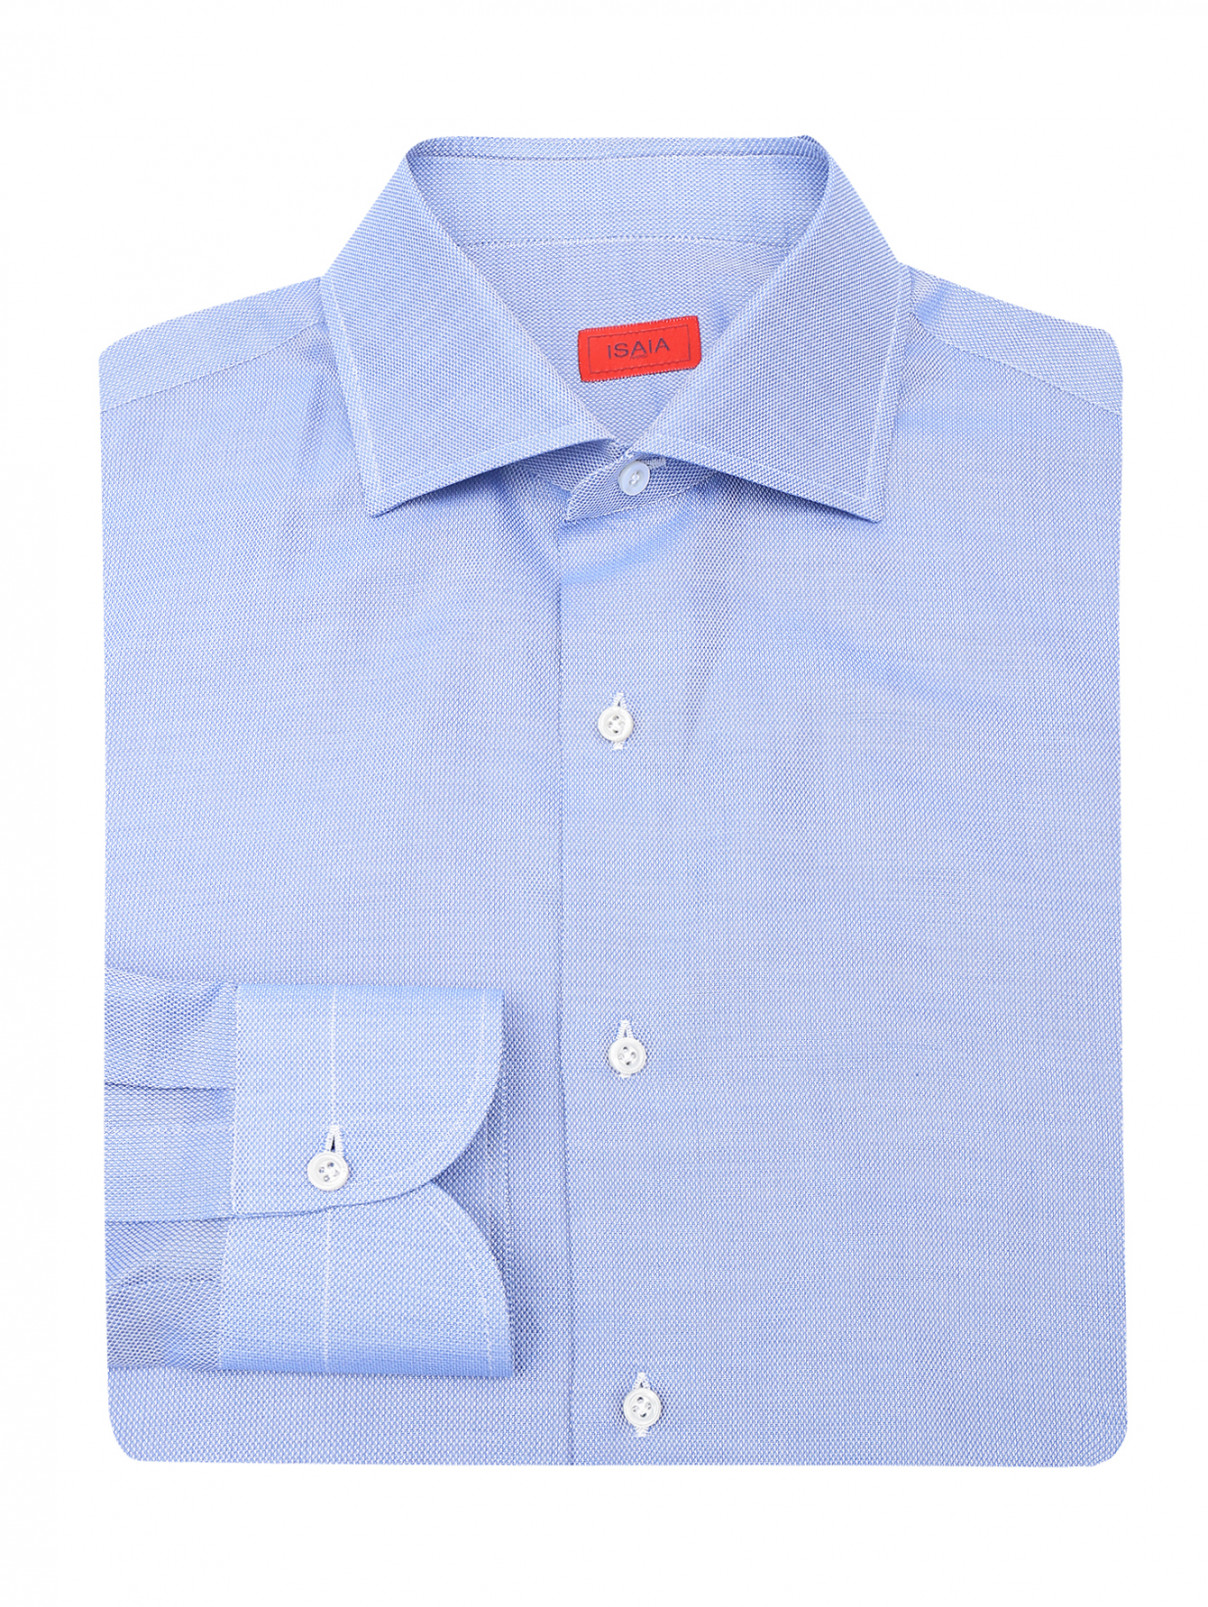 Рубашка из хлопка на пуговицах Isaia  –  Общий вид  – Цвет:  Синий